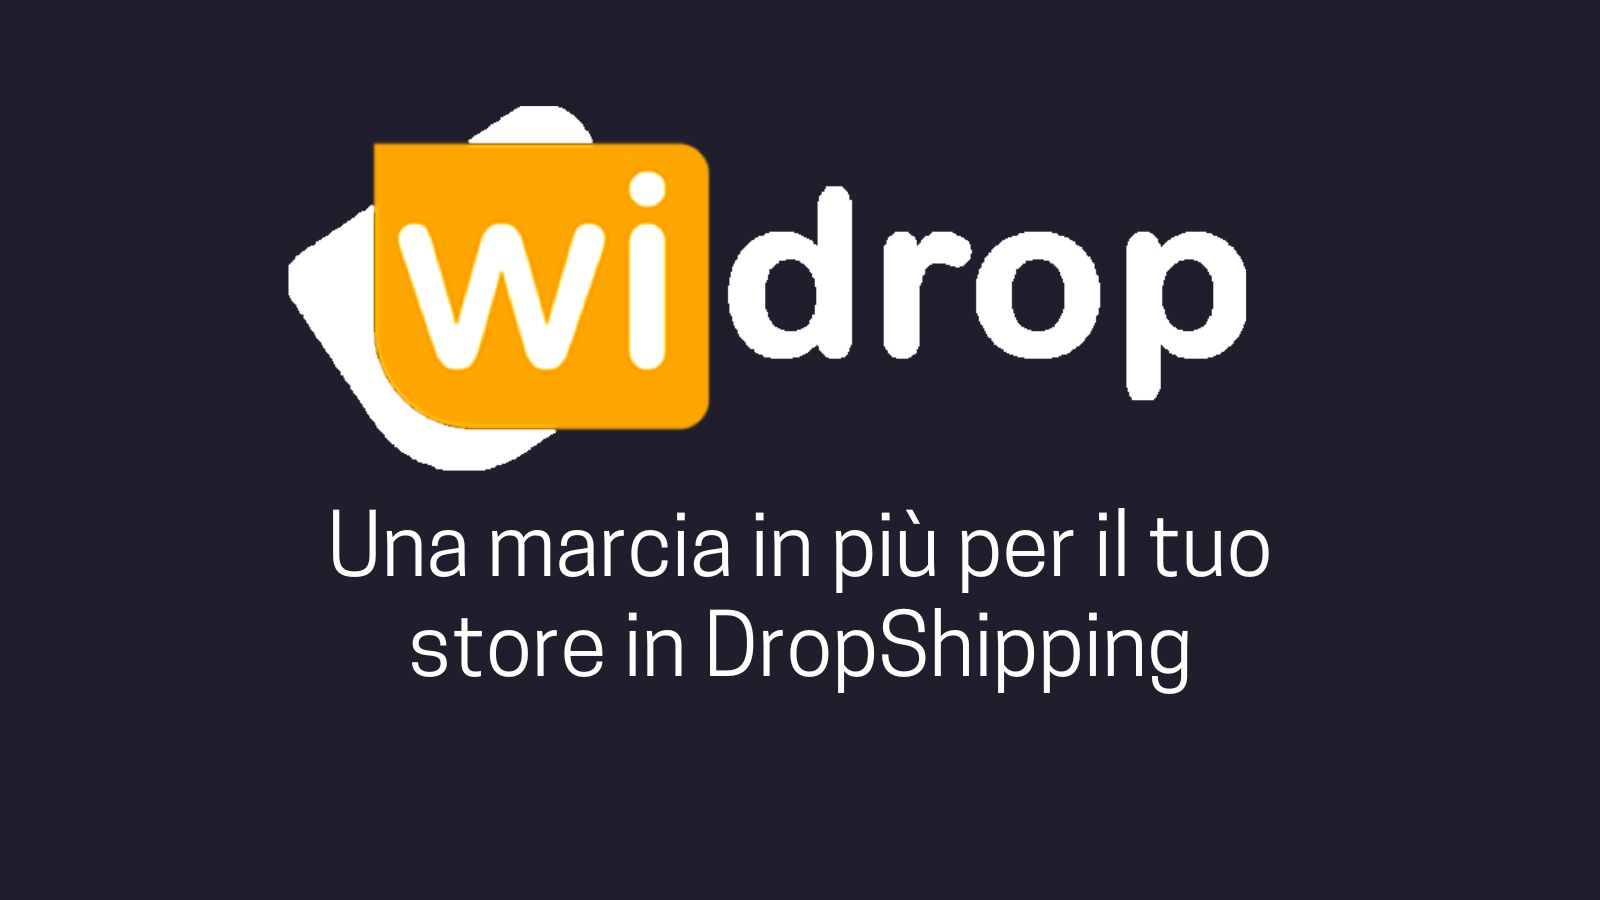 WiDrop - Una marcia in più per il tuo store in DropShipping